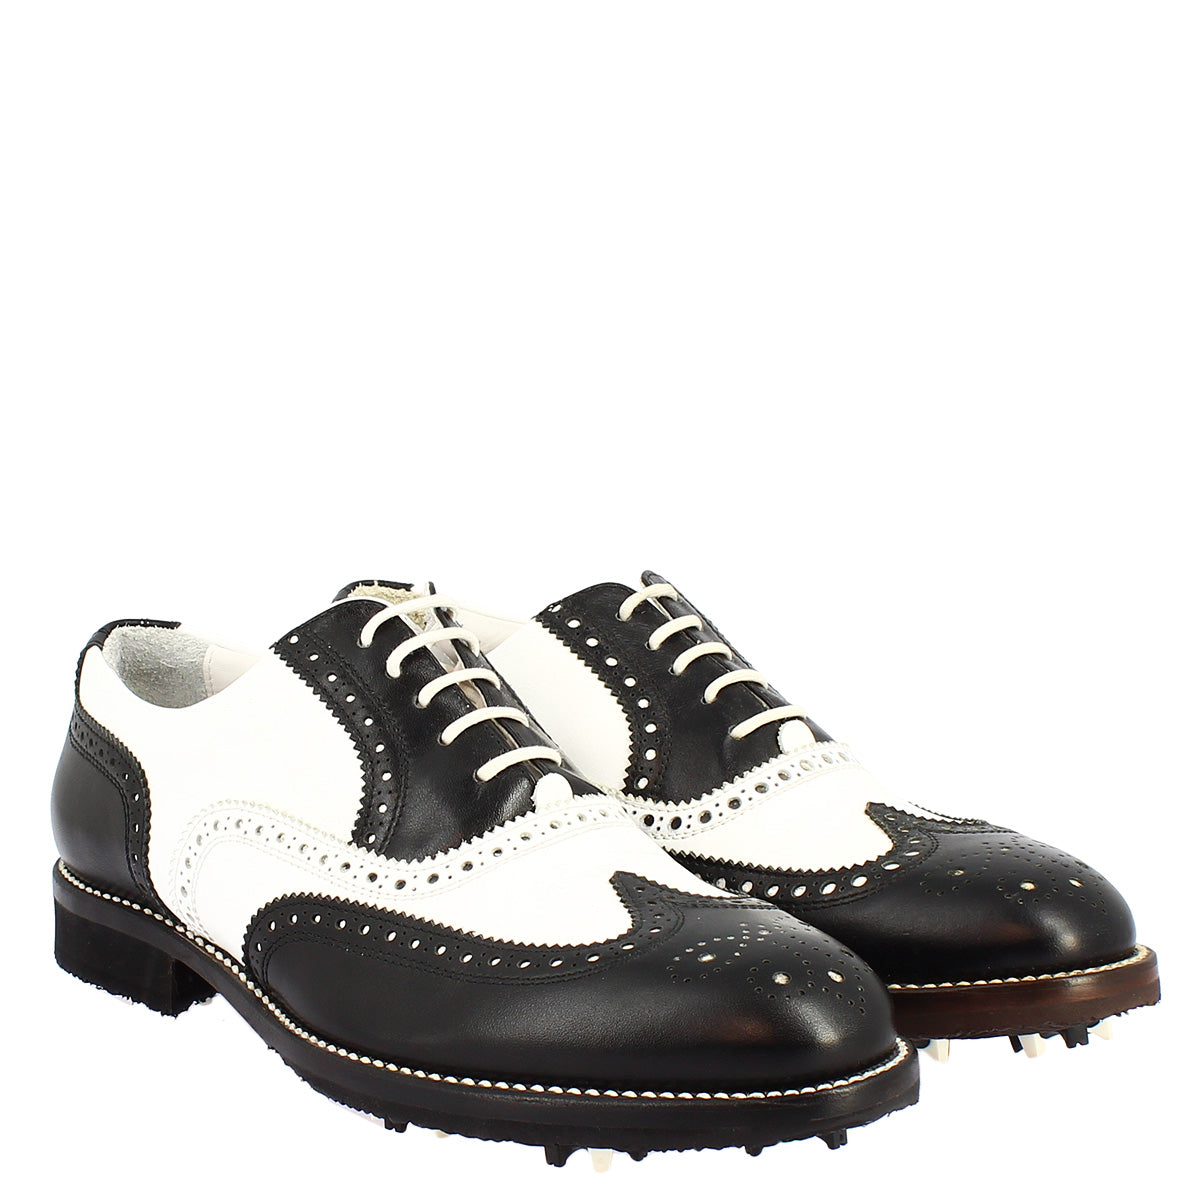 Zweifarbige schwarze und weiße handgefertigte Damen-Golfschuhe aus Leder